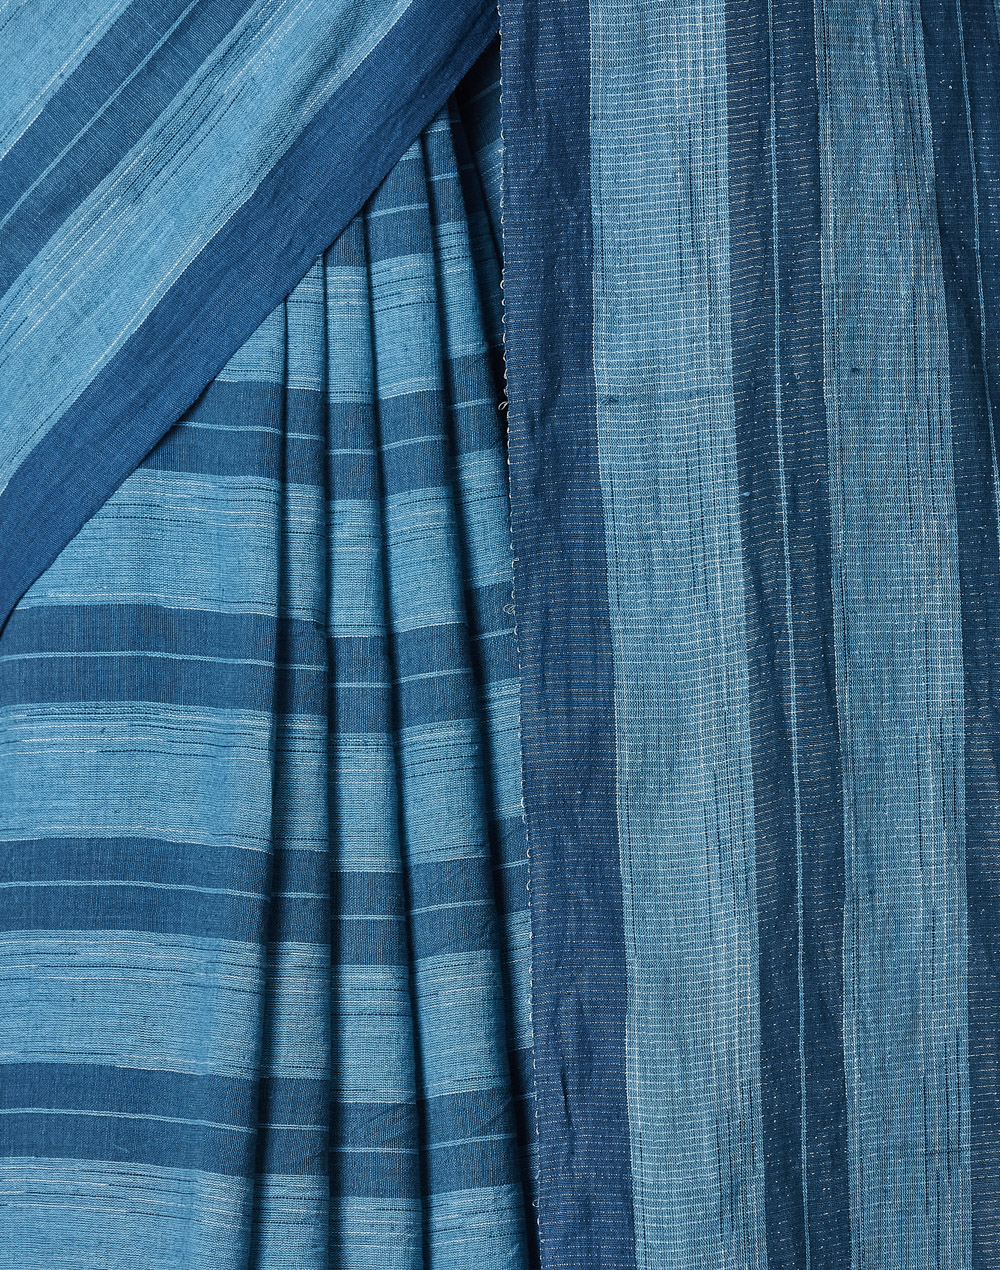 Indigo Cotton Hand Woven Sari